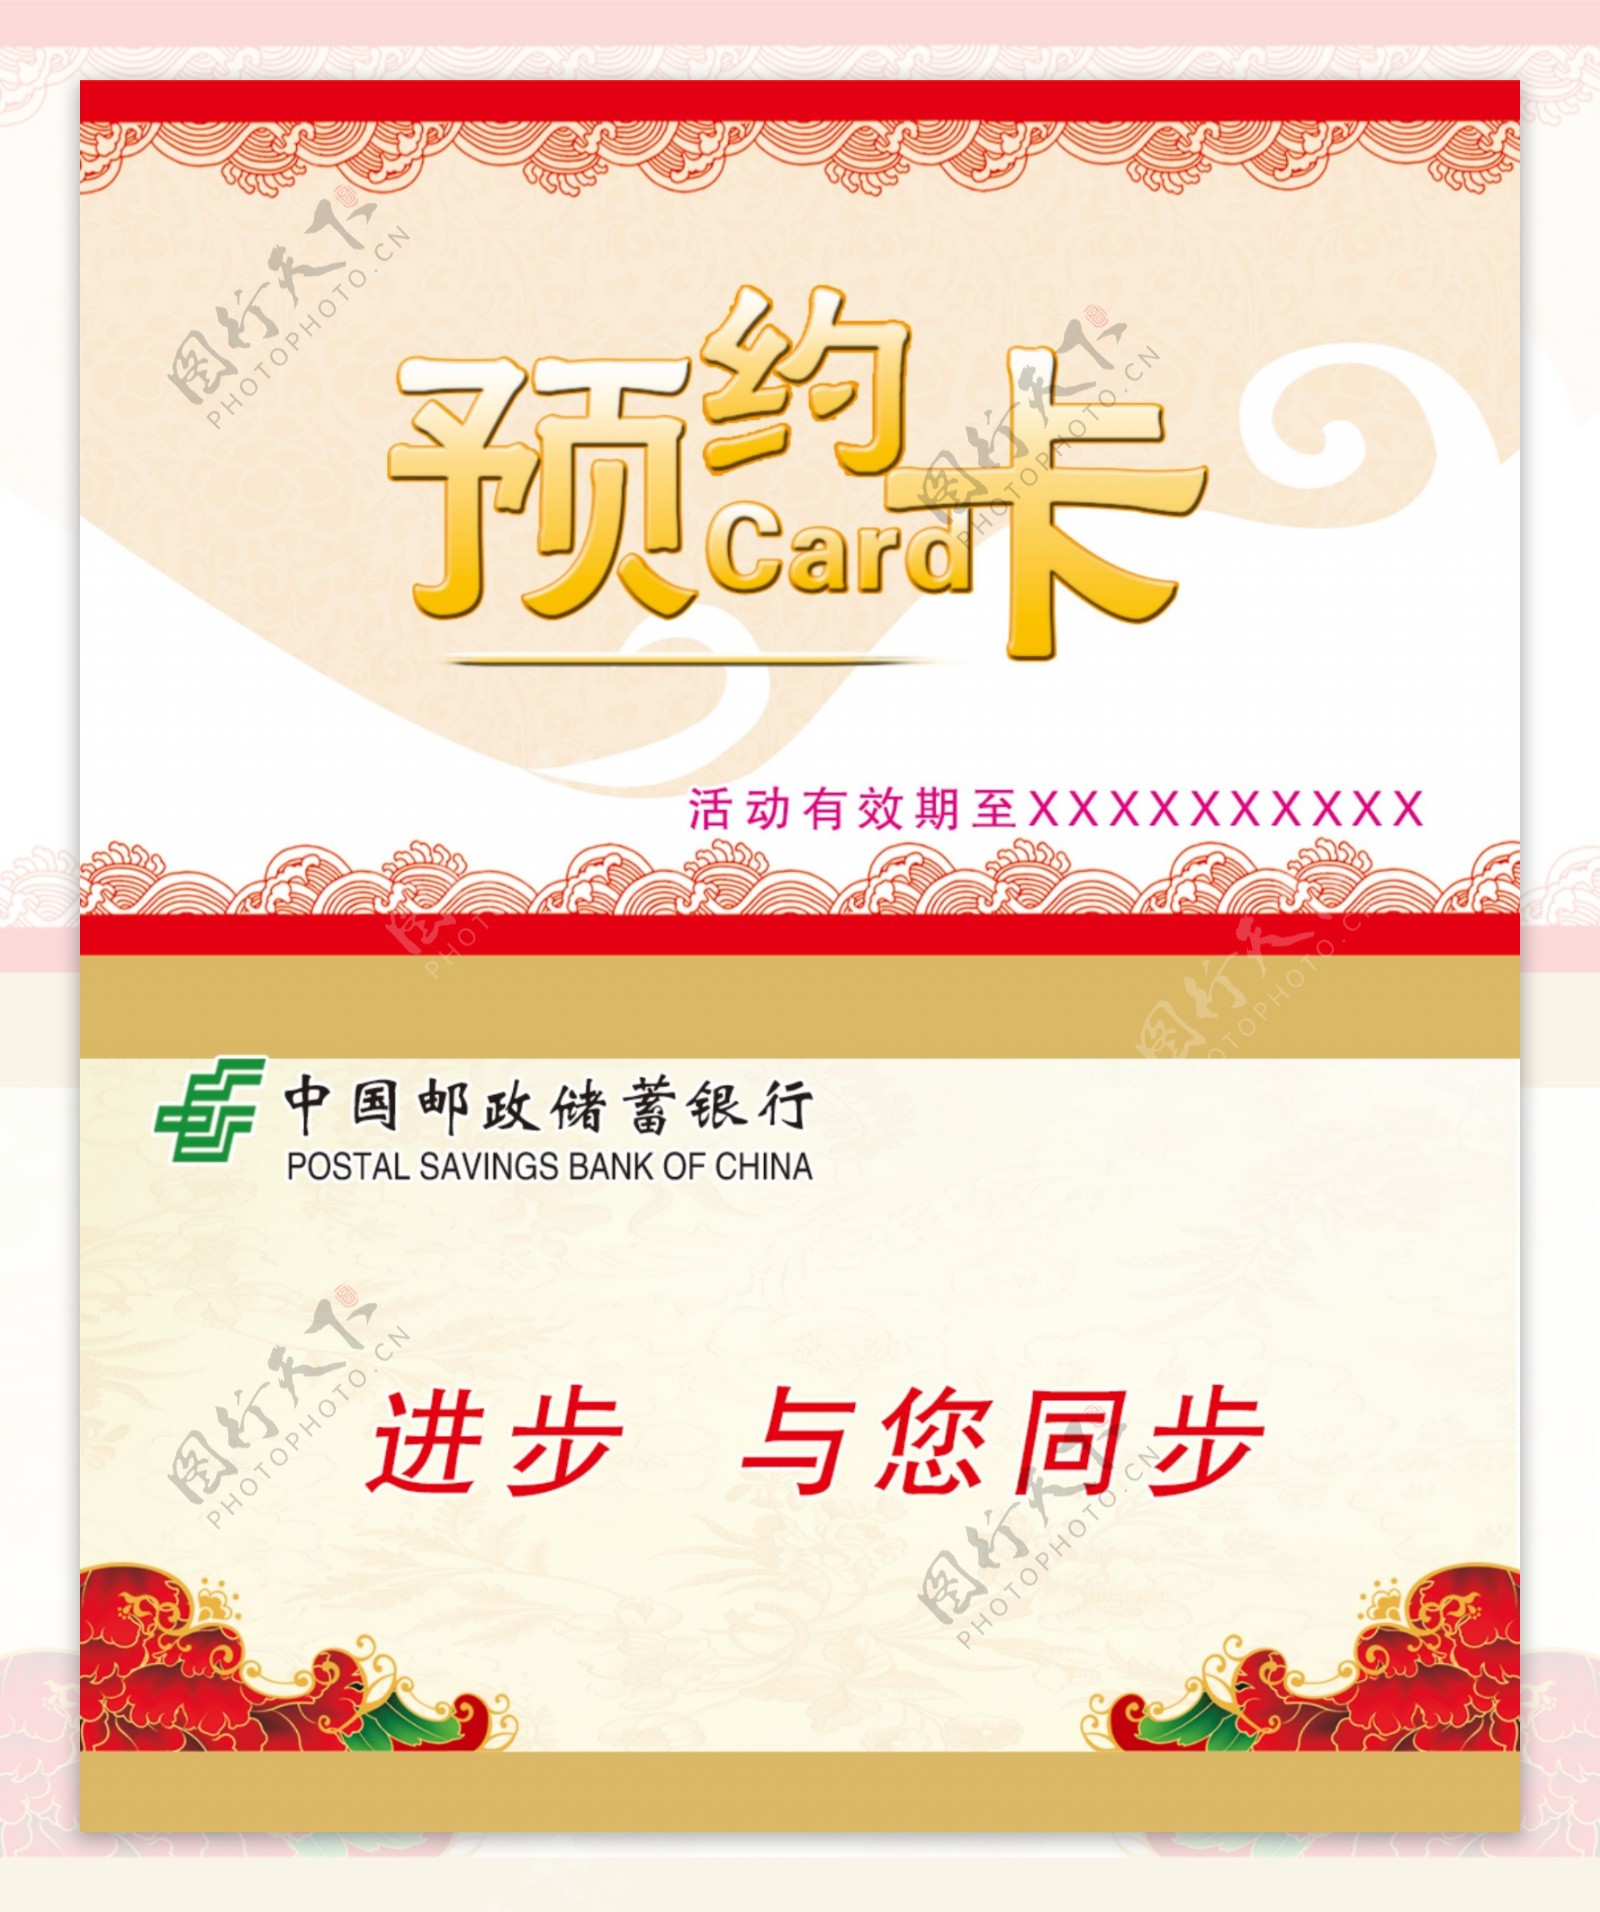 中国邮政预约卡